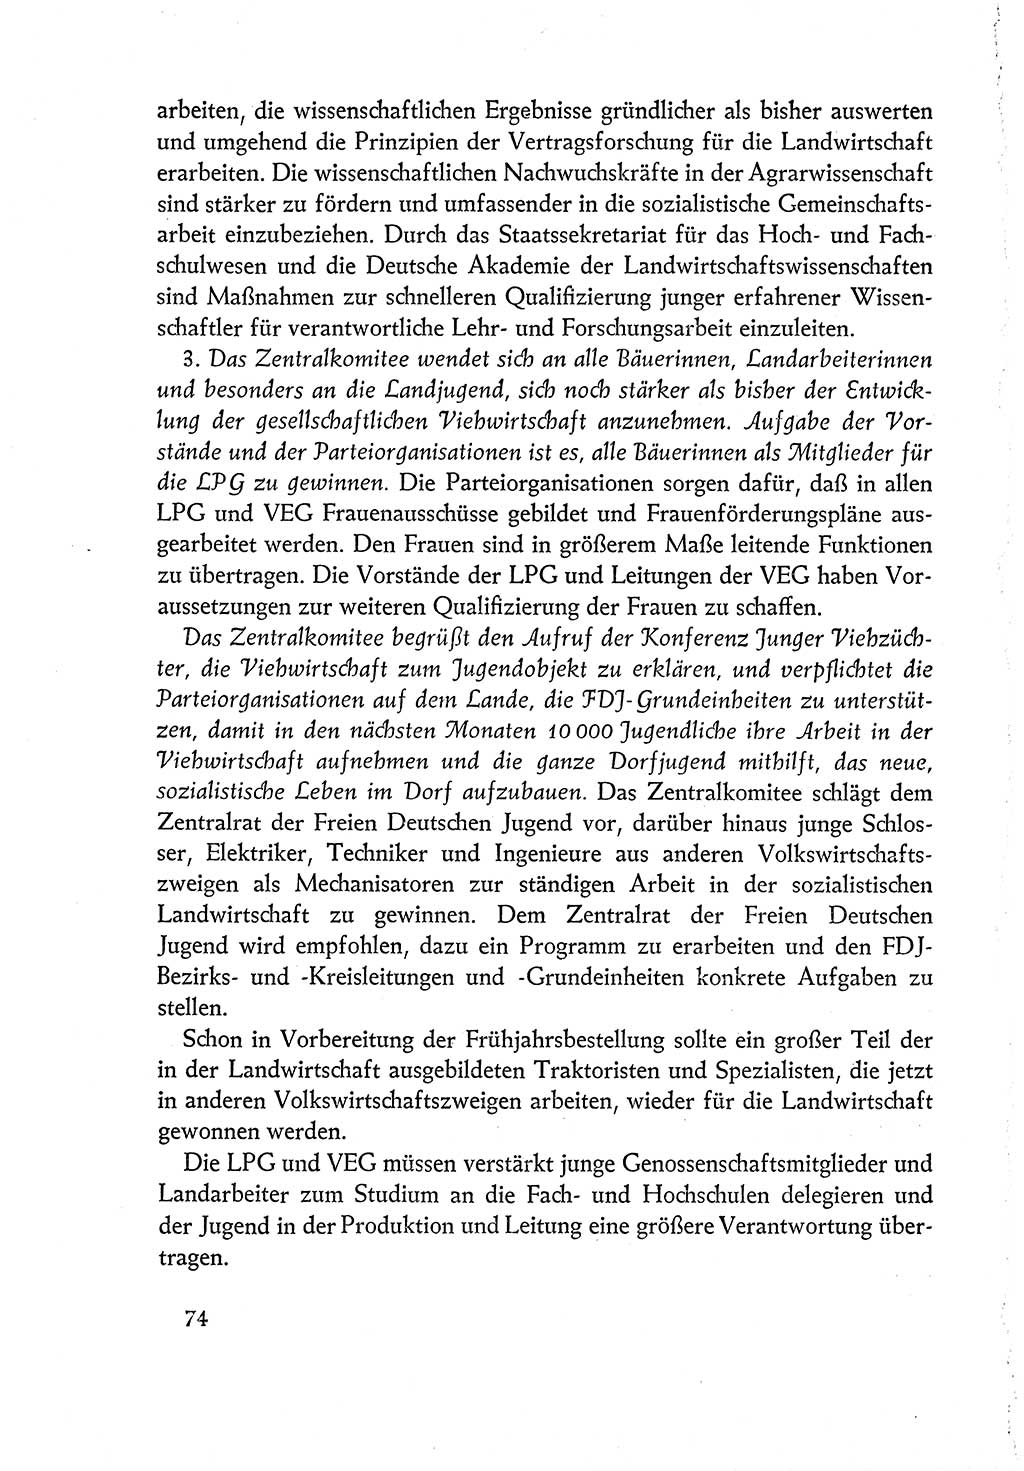 Dokumente der Sozialistischen Einheitspartei Deutschlands (SED) [Deutsche Demokratische Republik (DDR)] 1960-1961, Seite 74 (Dok. SED DDR 1960-1961, S. 74)